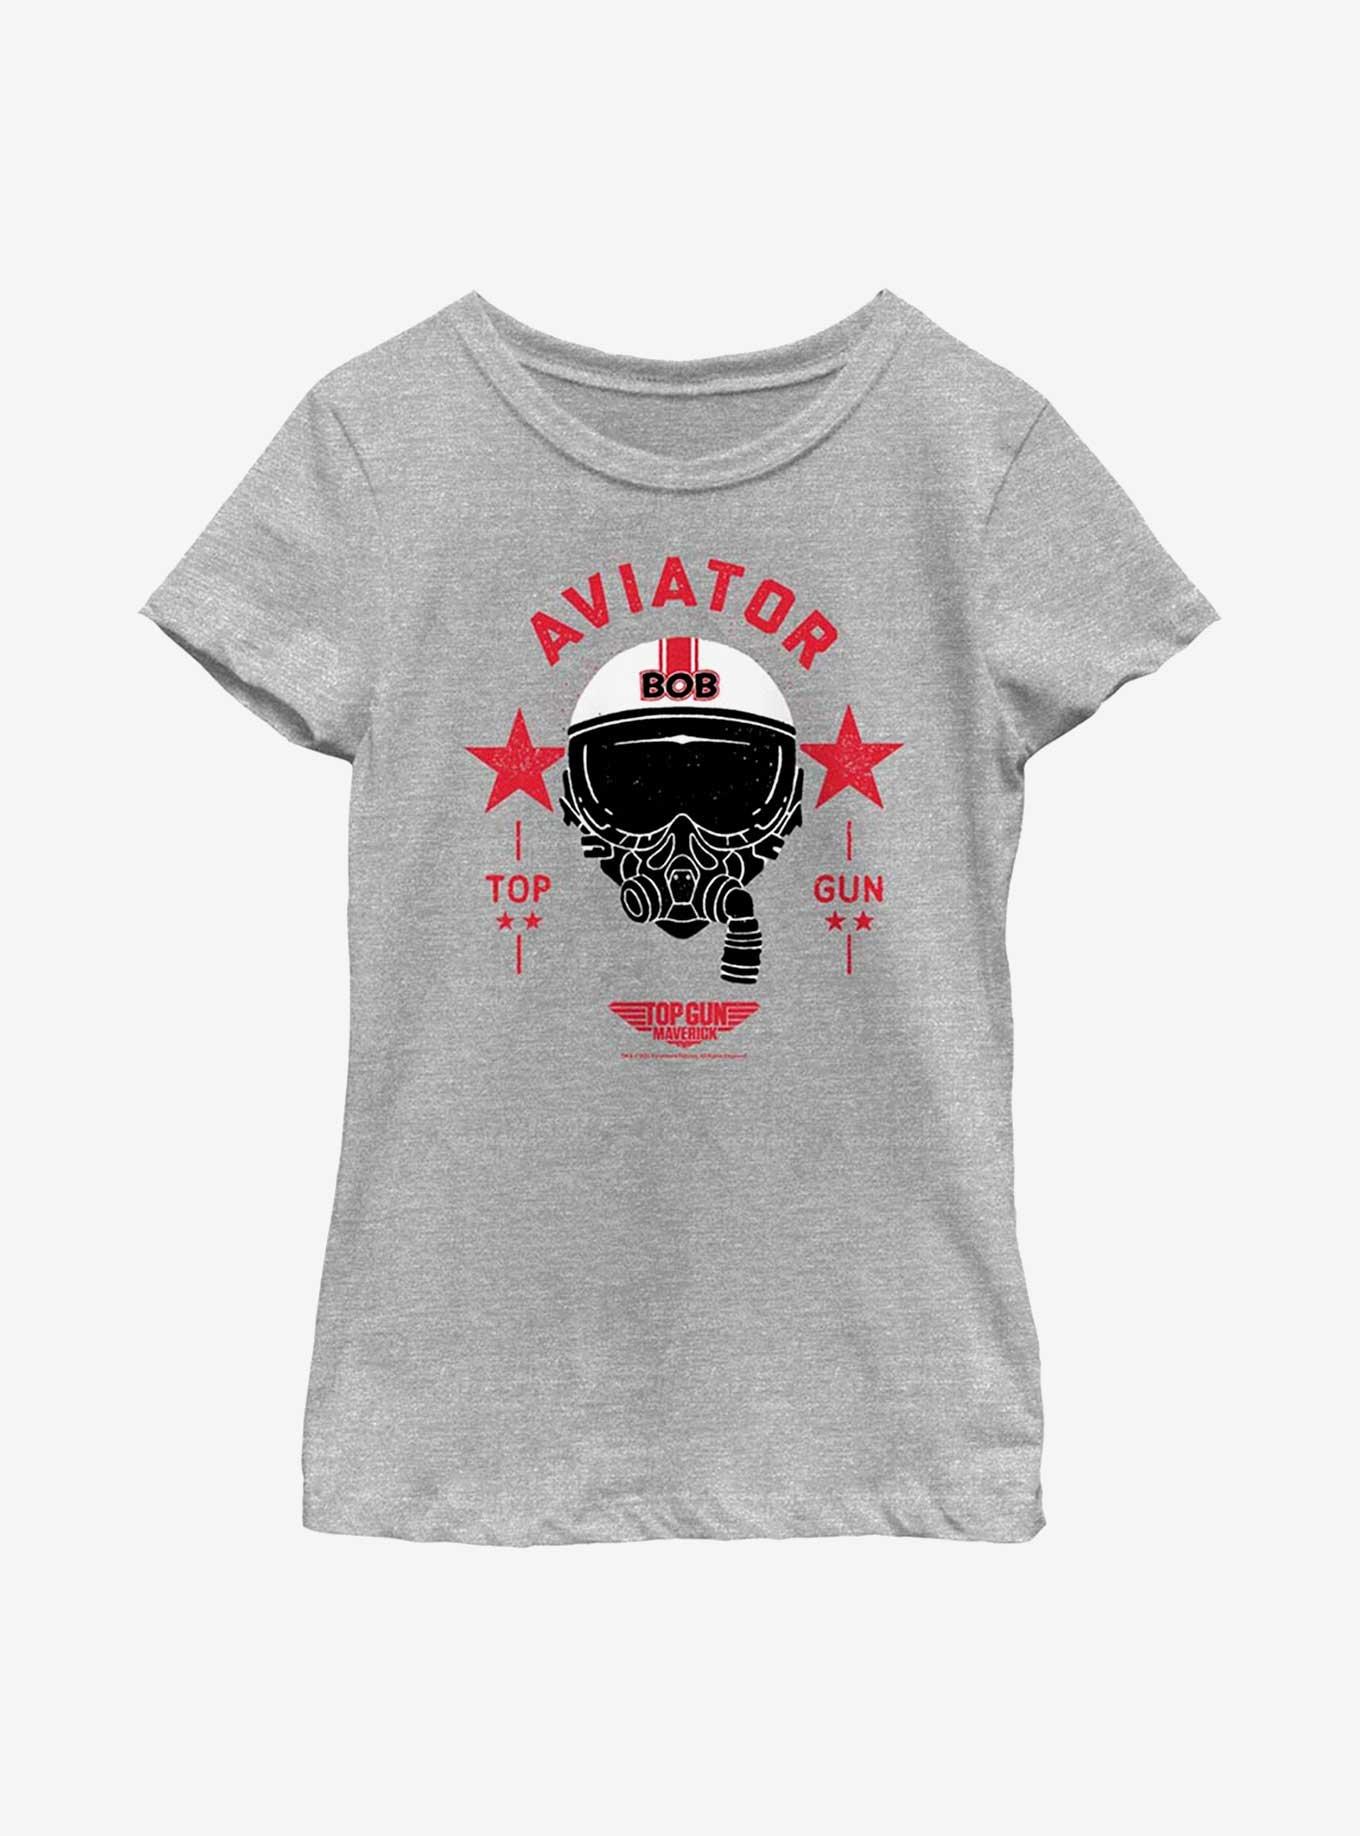 Top Gun: Maverick Bob Aviator Youth Girls T-Shirt, ATH HTR, hi-res